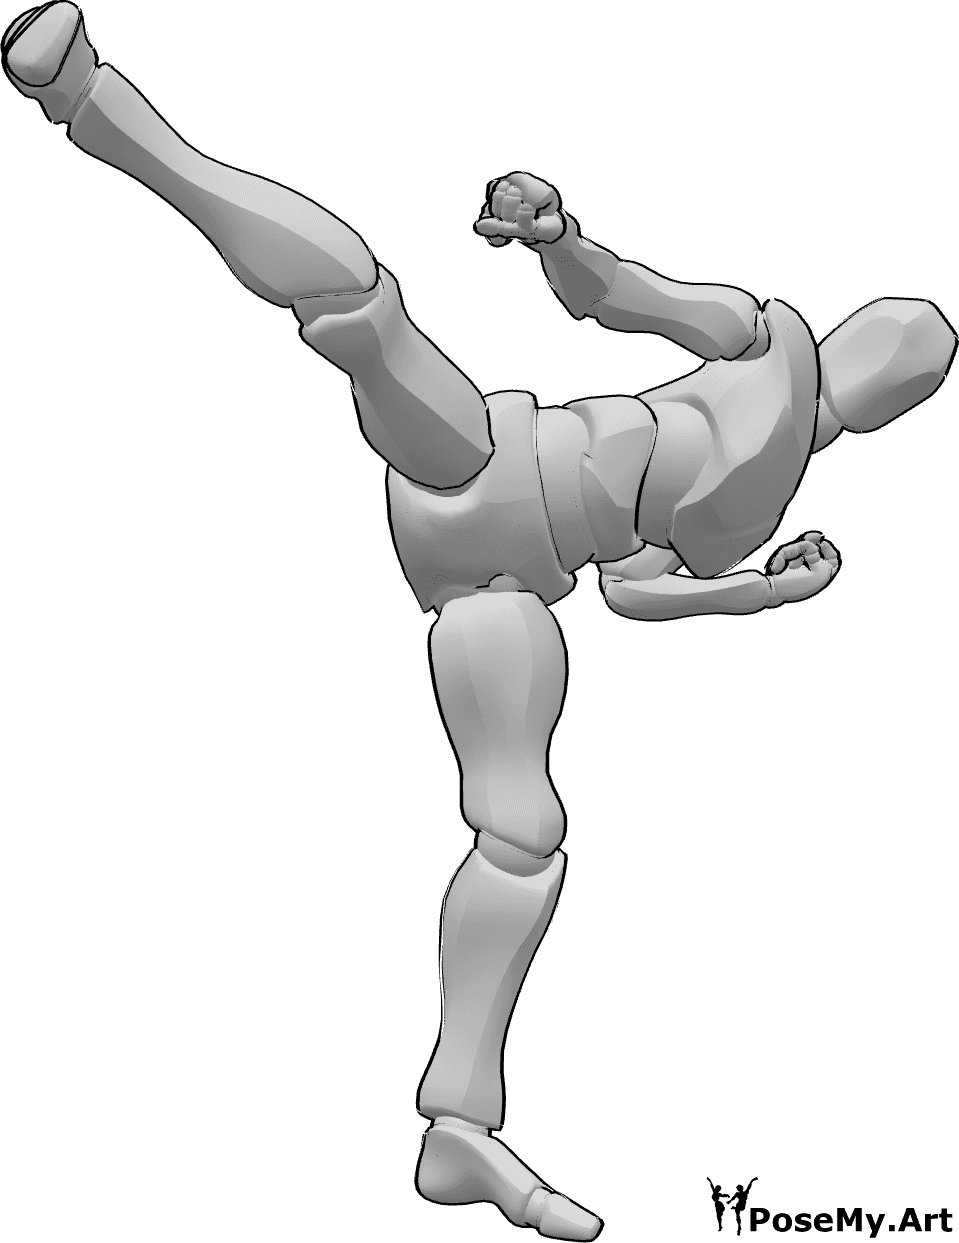 Referência de poses- Pose de pontapé de taekwondo masculino - Pontapé frontal de taekwondo masculino com pose da perna direita